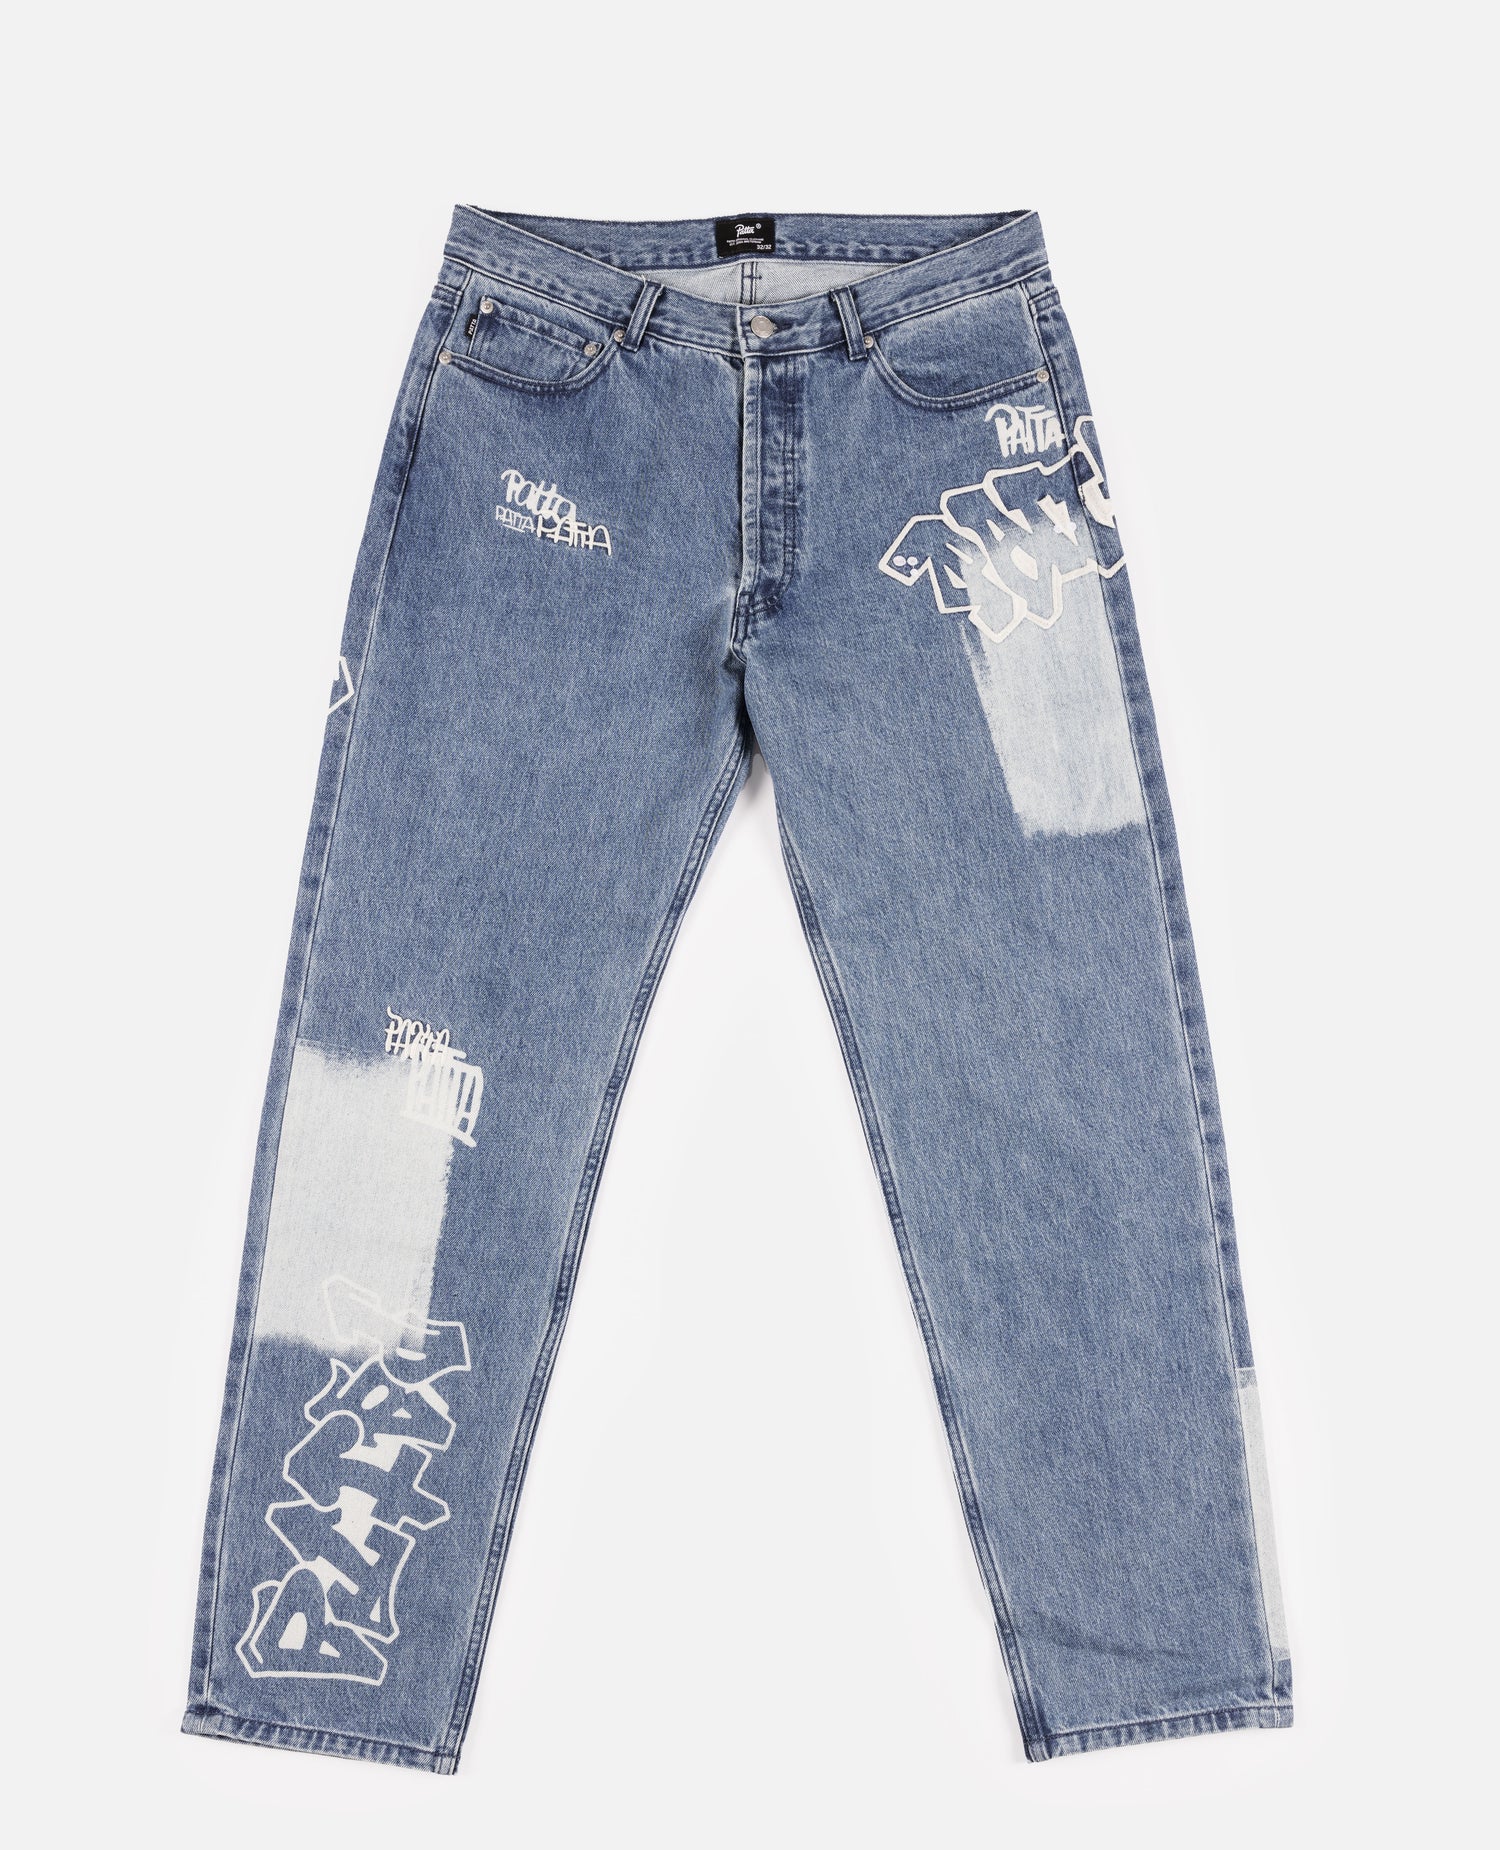 Pantalon en jean Patta Graffiti (bleu clair)